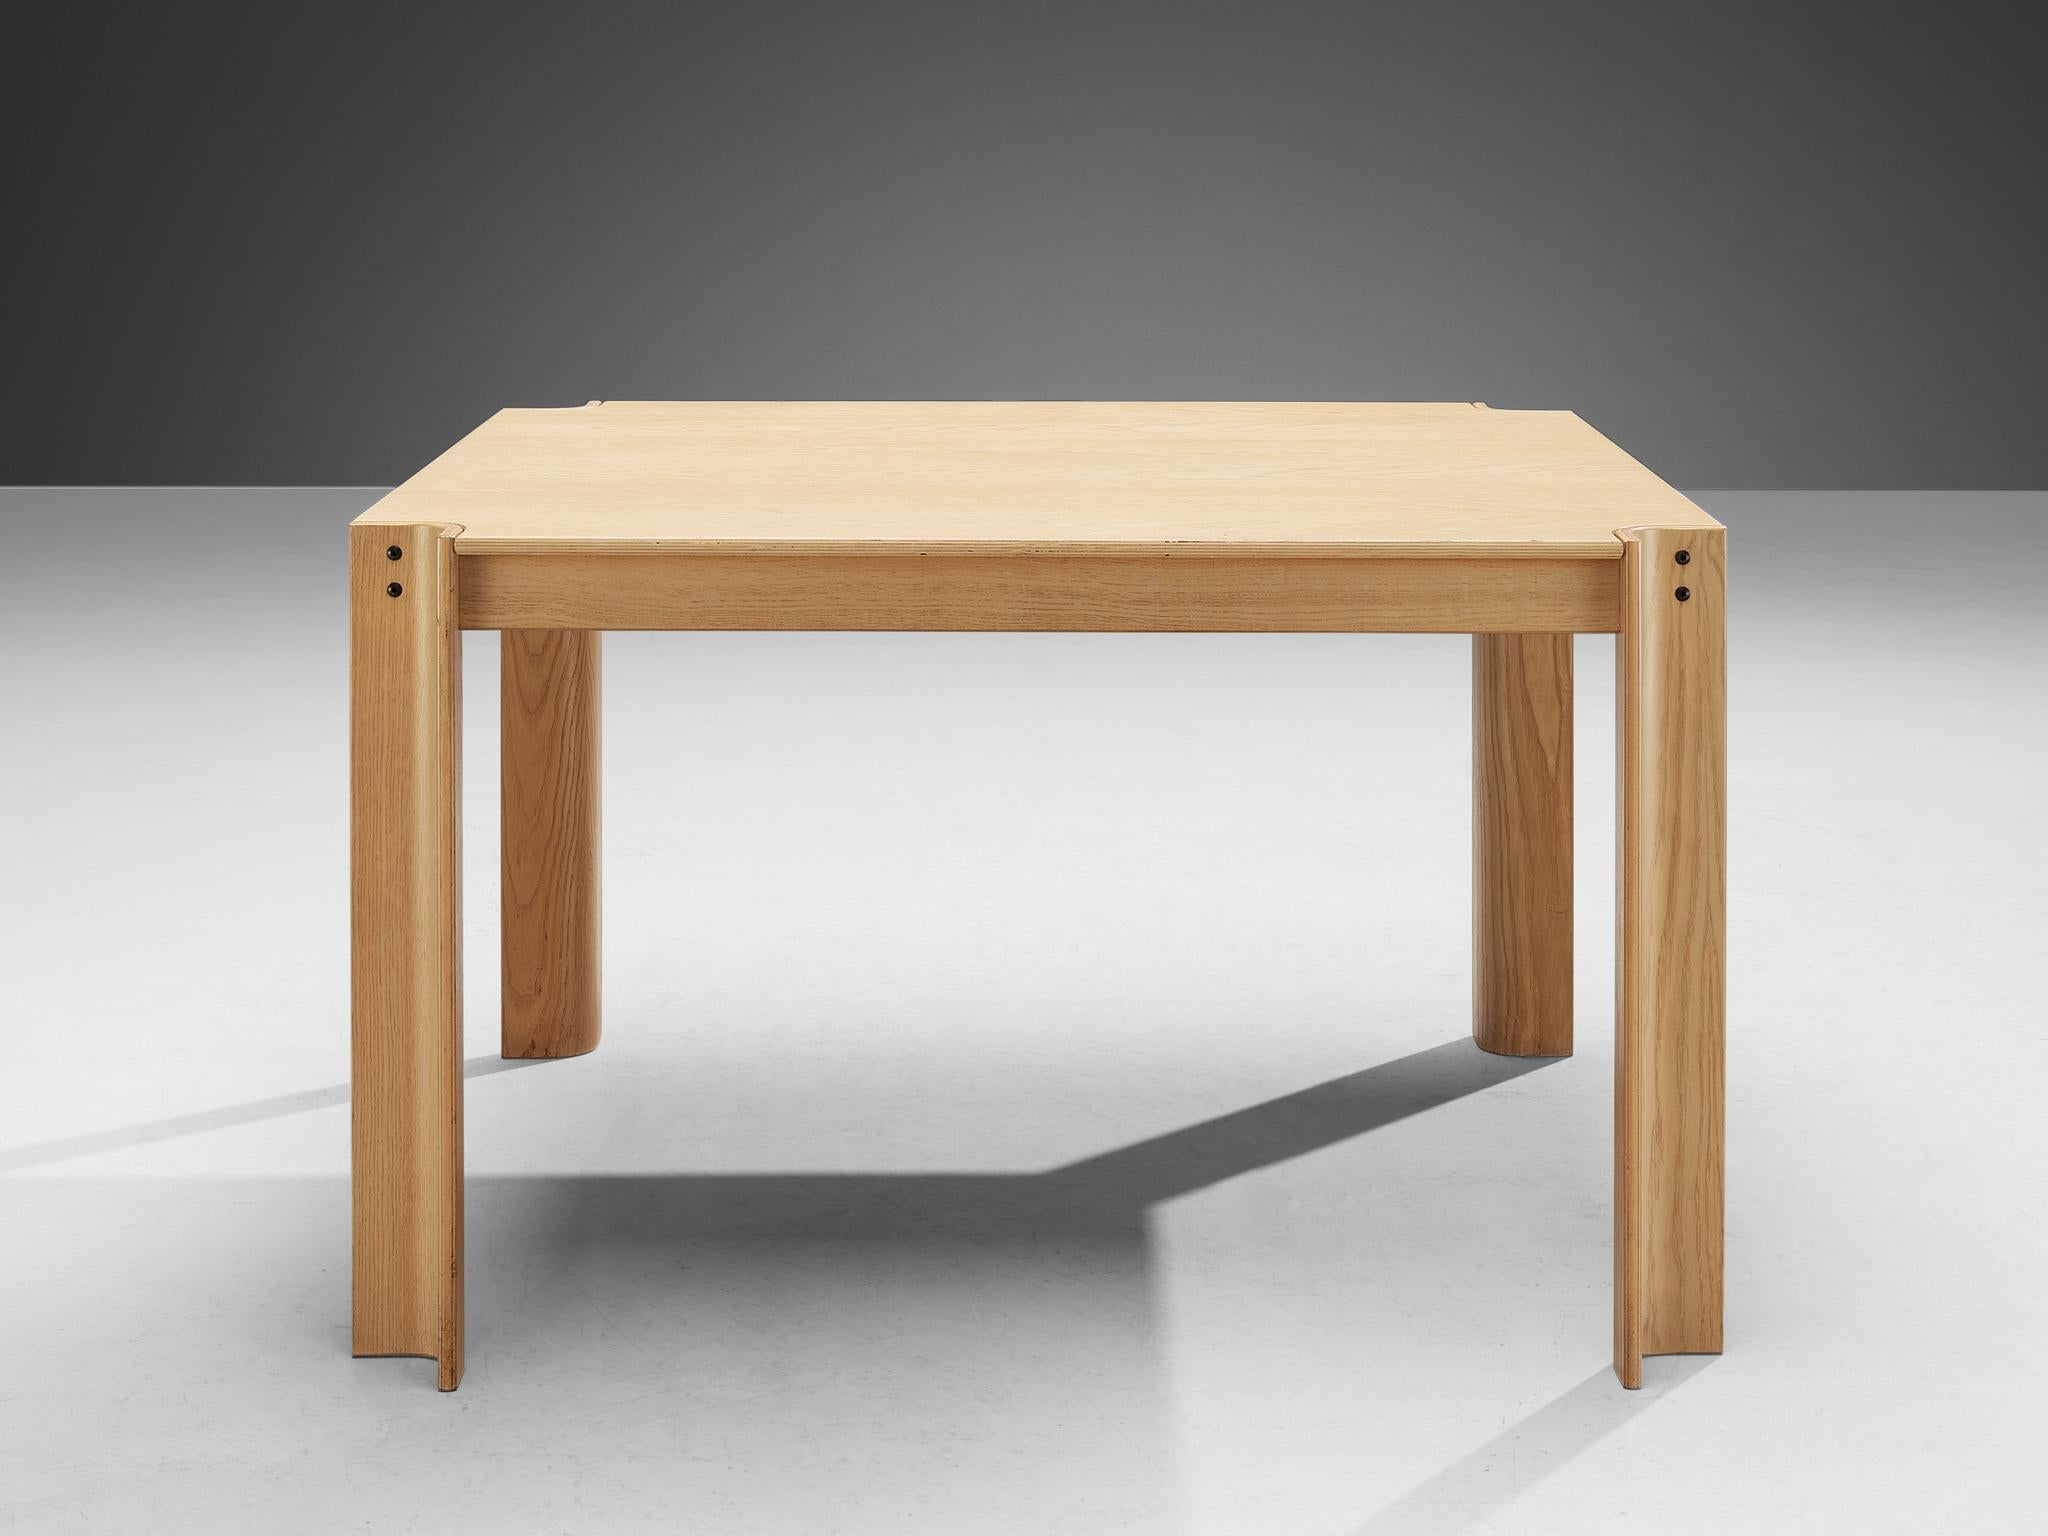 Gijs Bakker für Castelijn, Esstisch 'Strip', Eiche, Niederlande, Entwurf 1974.

Dieser Tisch wurde von dem niederländischen Möbel- und Schmuckdesigner Gijs Bakker entworfen. Der Esstisch wurde 1974 entworfen und zeichnet sich durch die gebogenen,